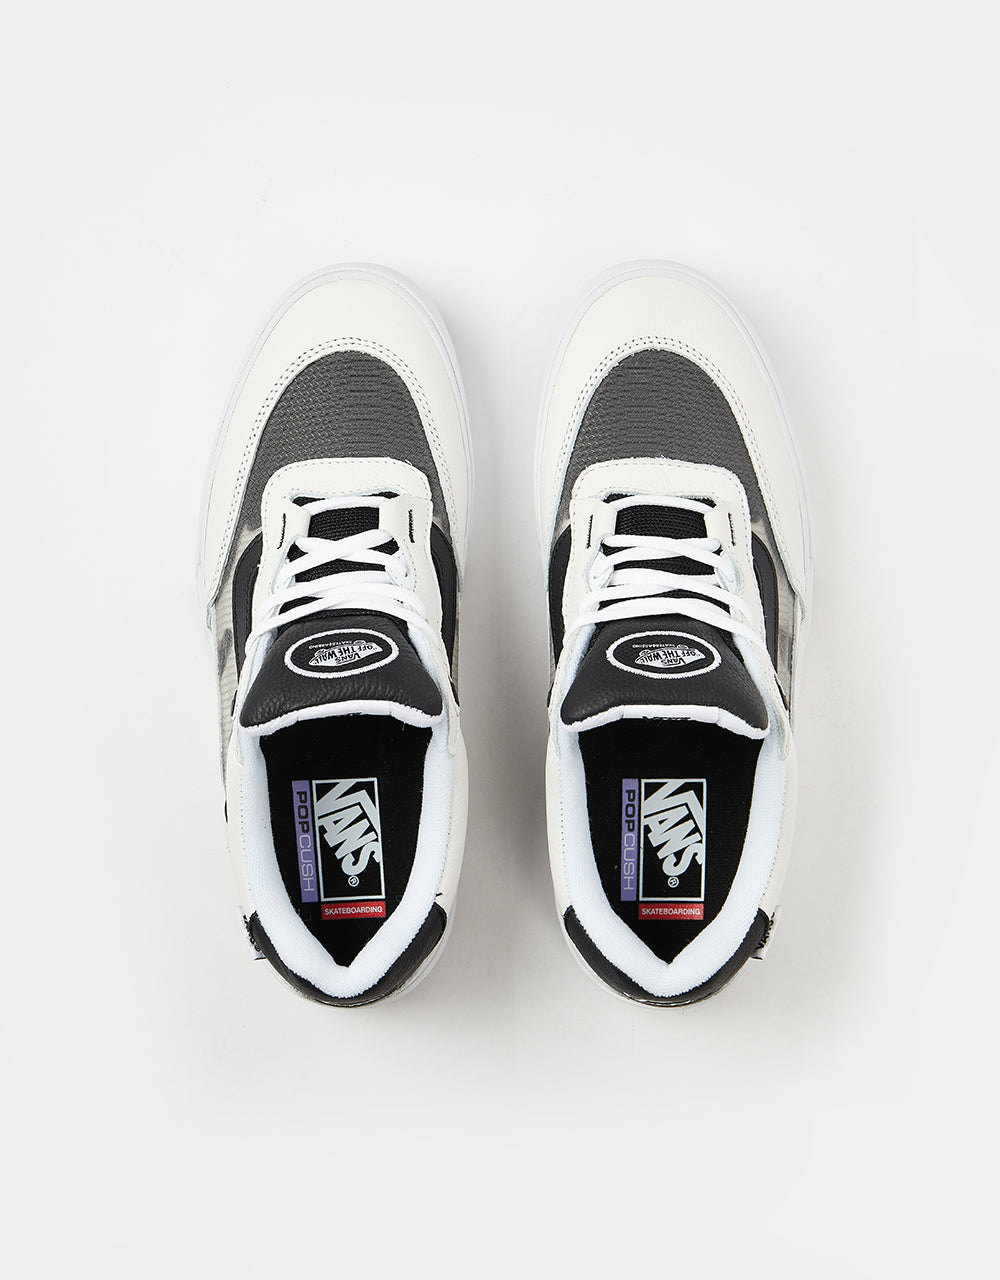 Vans Wayvee Skate Shoes -  Leather True White/Black